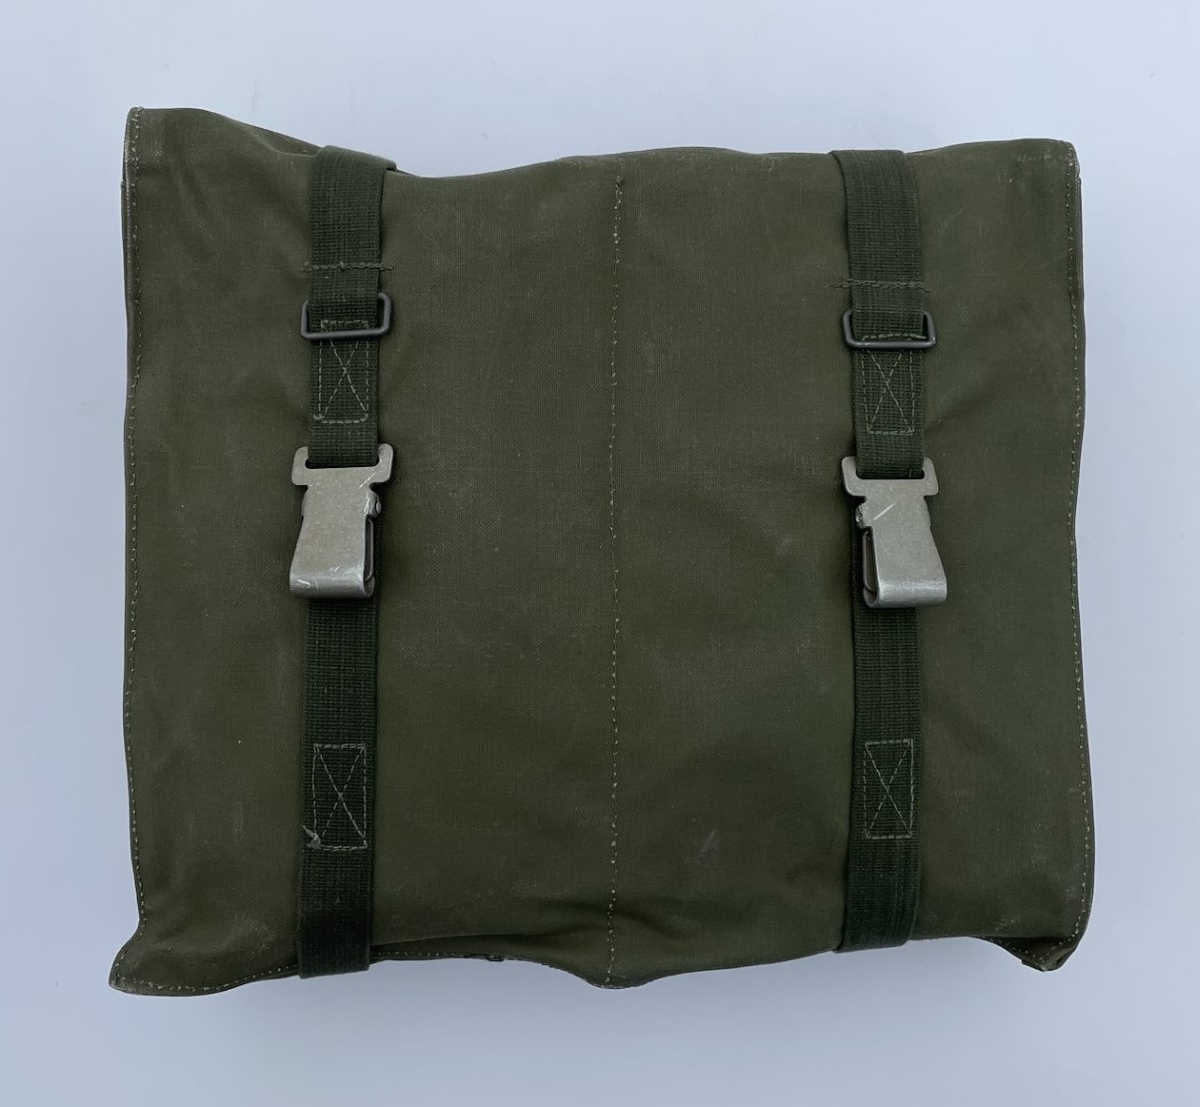 Förbandsväska 6 med förbandssats 4 (förbandssats för hemvärn). Väskan är tillverkad av grön kanvas och har ett större och två mindre innerfack.
Innehållet är komplett enligt satslista från 1965 och består av:
Fyra Förbandspaket 2
Sex Första förband
En aluminiumask (10x7x2,5 cm) med en tvål (40g)
Två paket bomull, 50 g
Tre bomullstygbindor (gröna)
En gummibinda (orange)
Ett paket fetvadd, 250 g
En rulle häftplåster 5m x 2,5 cm i en rund plåtask
Tre förbandsdukar trekantig (aven kallad mitella, i grönt tyg)
Ett fodral F11 i grönt tyg med en nagelborste
Ett fodral F25 i grönt vaxdukliknande material med en handduk
Fem pappersbägare
En Besticksats A (sjukvård, mindre, M8280-0036010) som förutom bindtyget (dvs fodralet) innehåller en febertermometer (i skyddshylsa), en operationssax (rak 15 cm) och en pincett (anatomisk 15 cm med tvär spets).
Ett fodral F25 i grönt vaxdukliknande material med en Skrivmaterielsats 1 (M8301-264010 enligt satslista 1972). Den innehåller ett linjerat block A6, en linjerad anteckningsbok A6, en blyertspenna, en blå och en röd penna, ett radergummi, en raderkniv och en förpackning med karbonpapper. (Lägg märke till att Skrivmaterielsats 1 inte finns med på de foton som visar innehållet i Förbandsväska 6, utan bara på en egen bild.)

I satslistan för Förbandssats 4 ingår också läkemedel, i det här fallet två förpackningar med sex sedacefenttabletter vardera, men de saknas. Läkemedel förvarades separat och fanns inte i förbandssatserna när de låg i mobiliseringsförråd.

Förutom det som finns upptaget i satslistan för Förbandssats 4 så finns i väskan också en axelrem i textil och två textilremmar som är ca 90 cm långa. Dessutom finns ett häfte ”Minnesregler för sjukvårdare”.